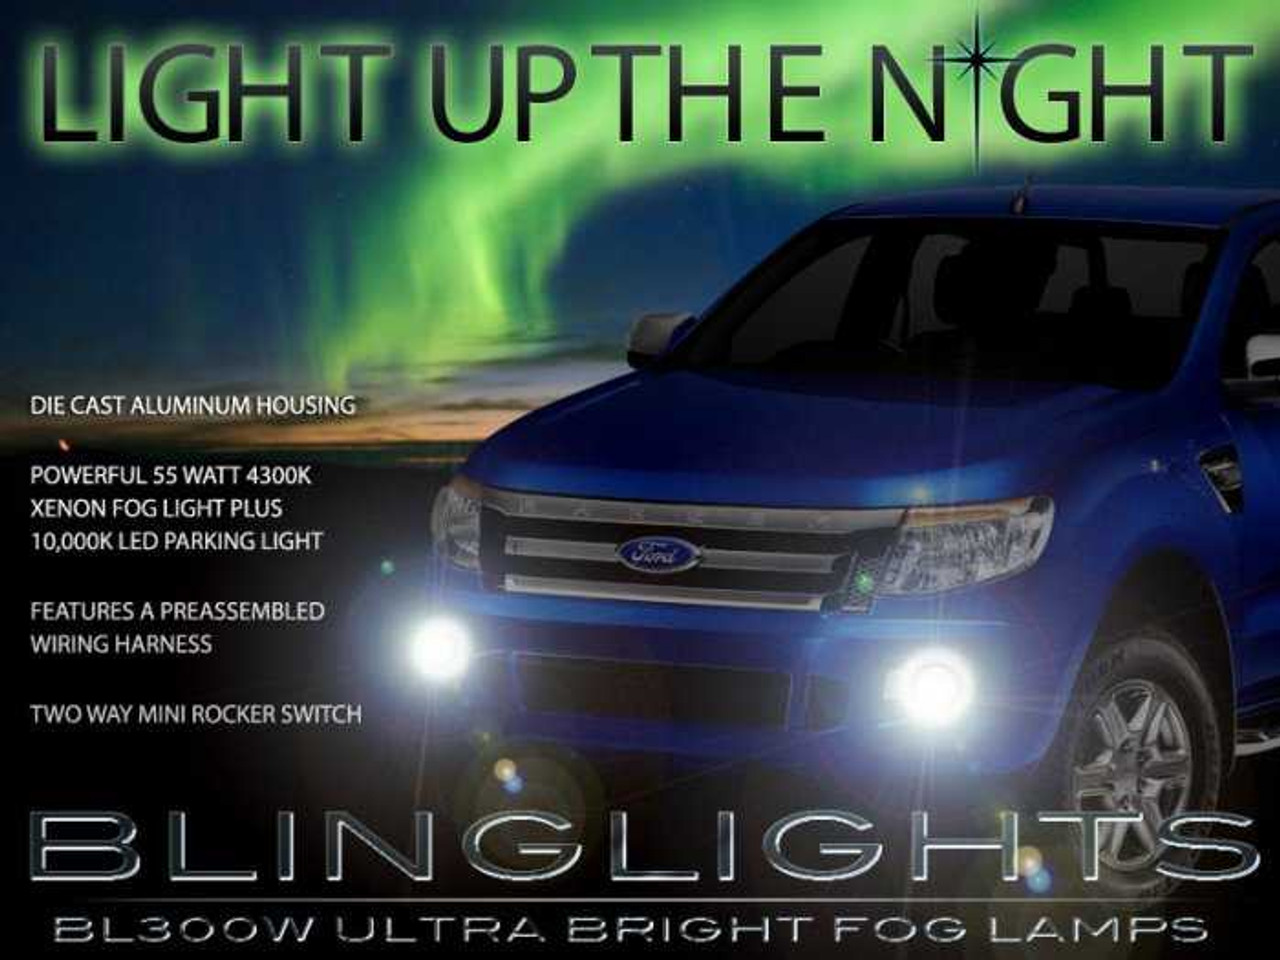 BlingLights Brand Fog Lights for 2011 2012 2013 2014 2015 Ford Ranger (T6)